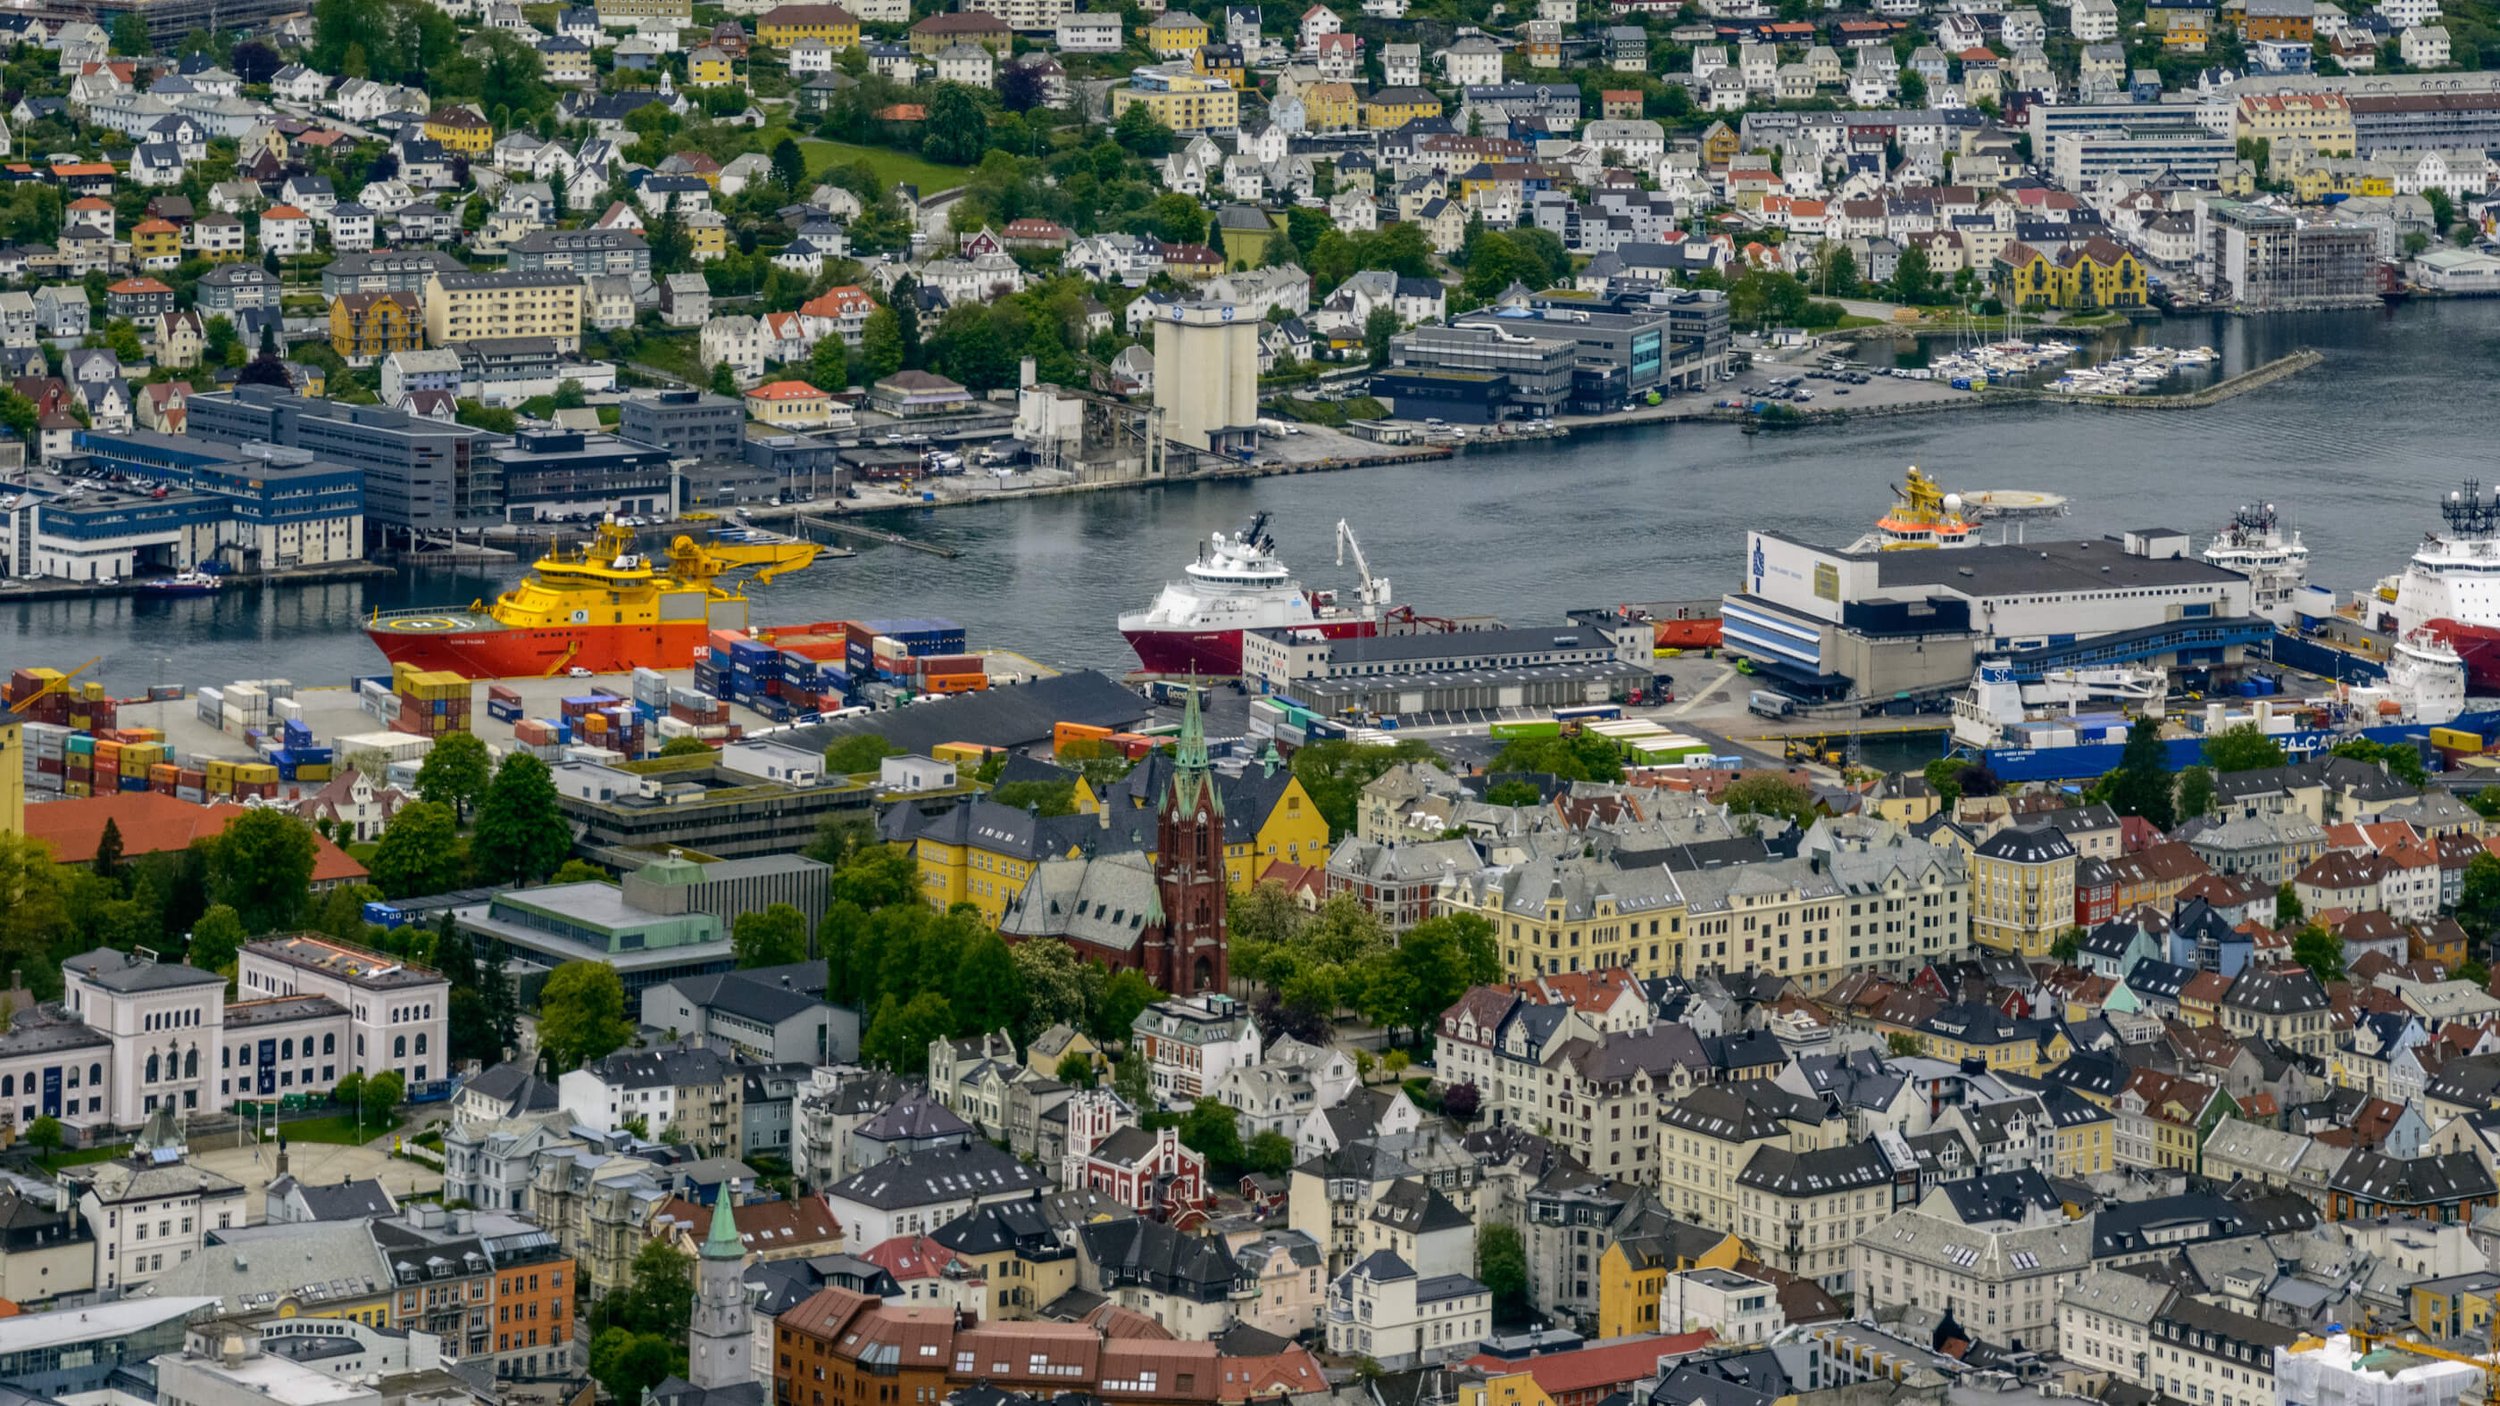 Bergen / Convertini / CC BY-SA 2.0